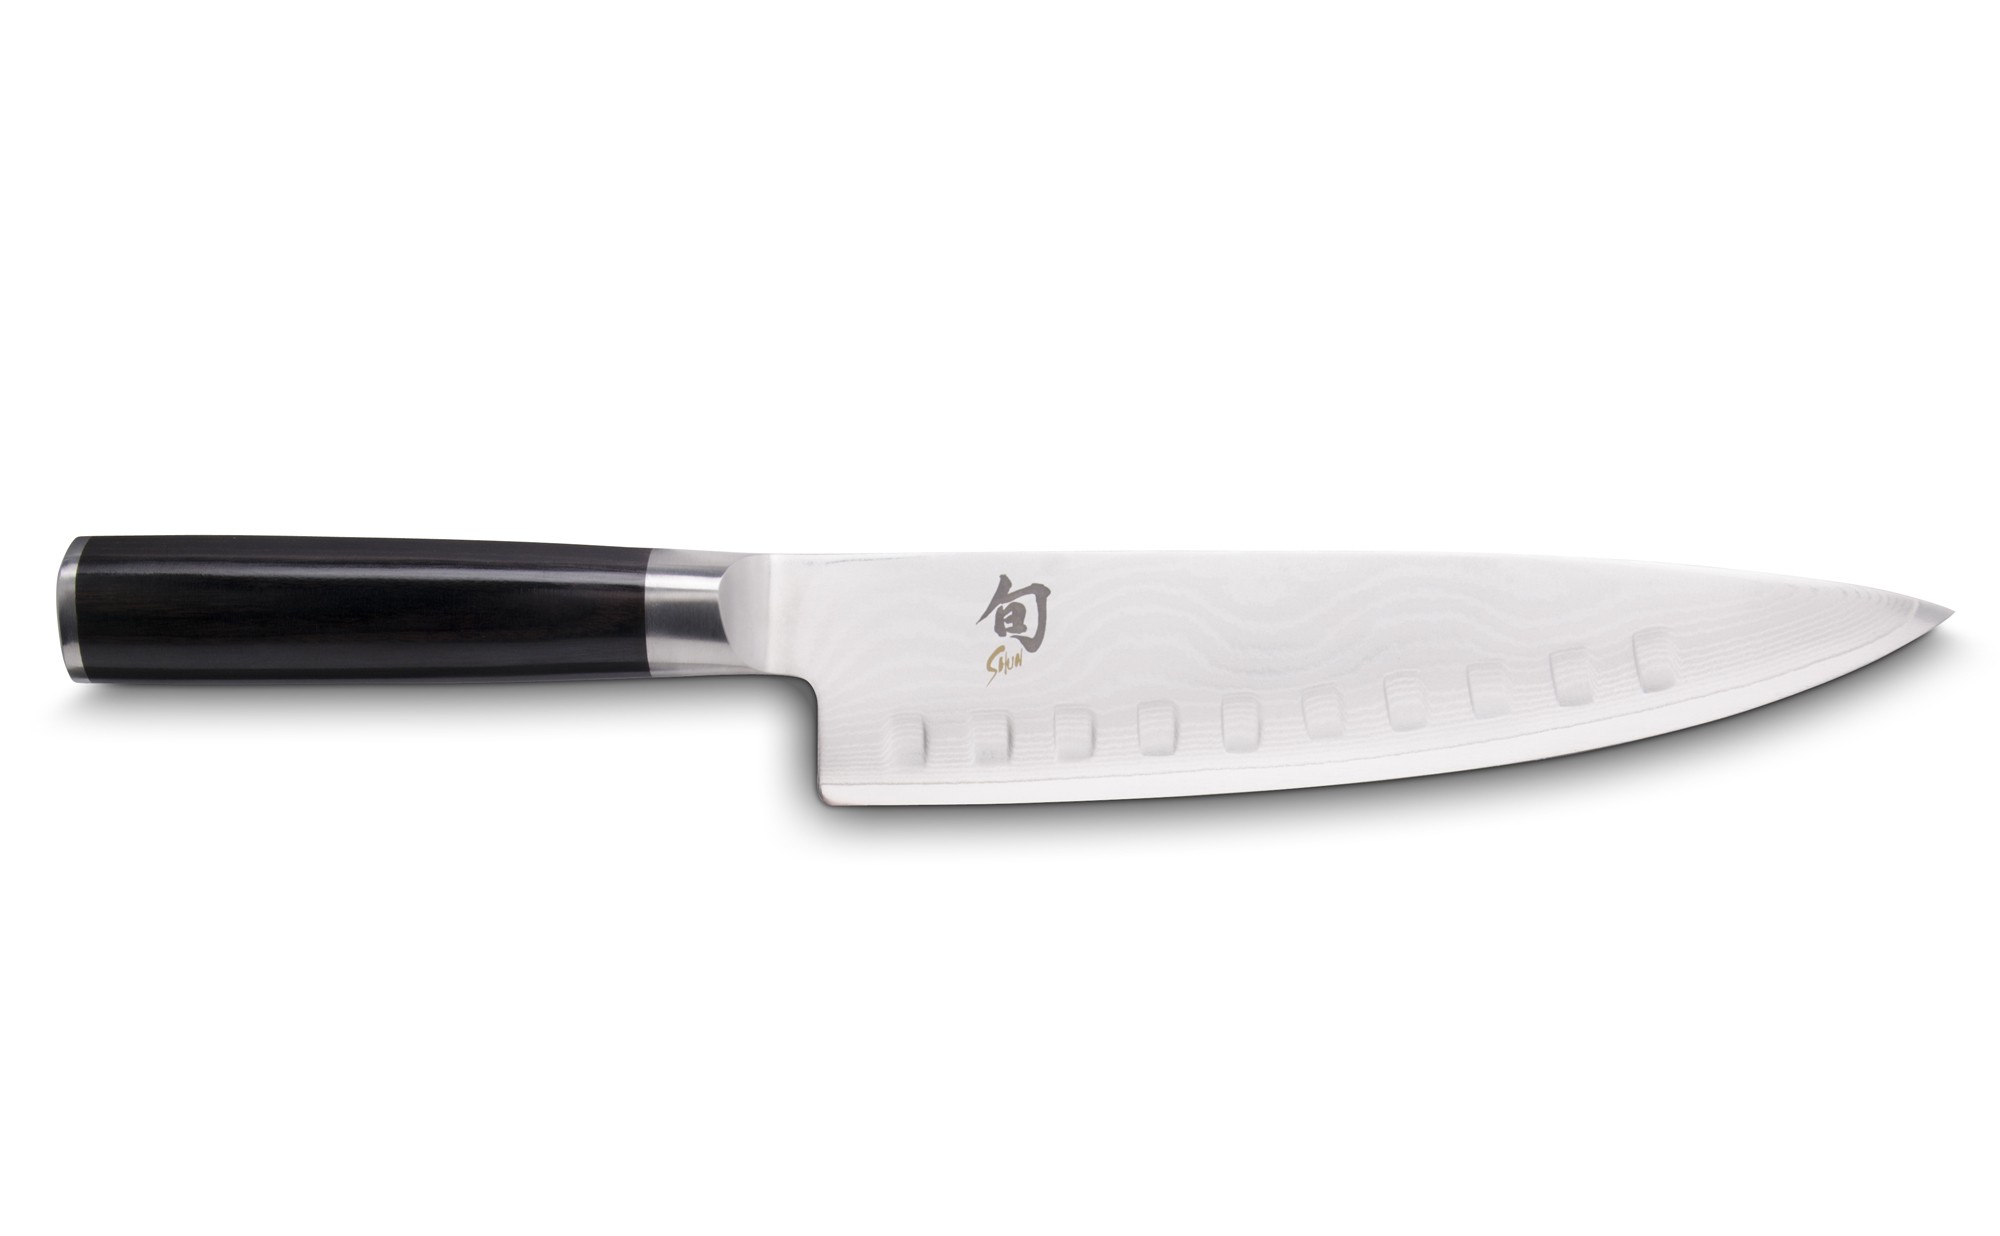 DM-0719 SHUN KNIFE 20cm KAI Japan